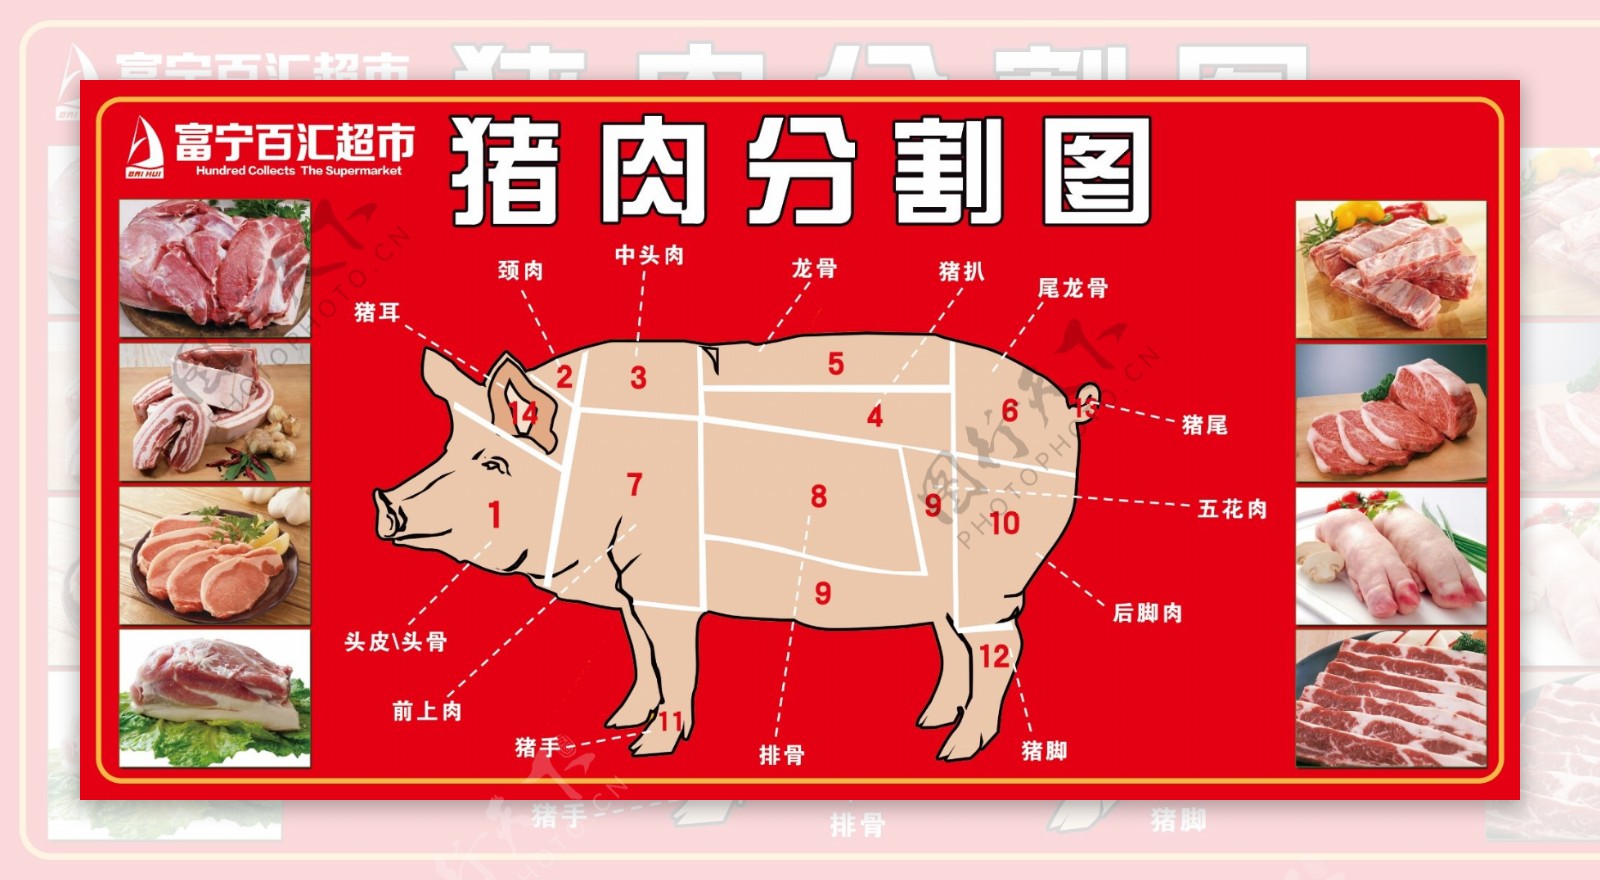 百汇超市猪肉分割图